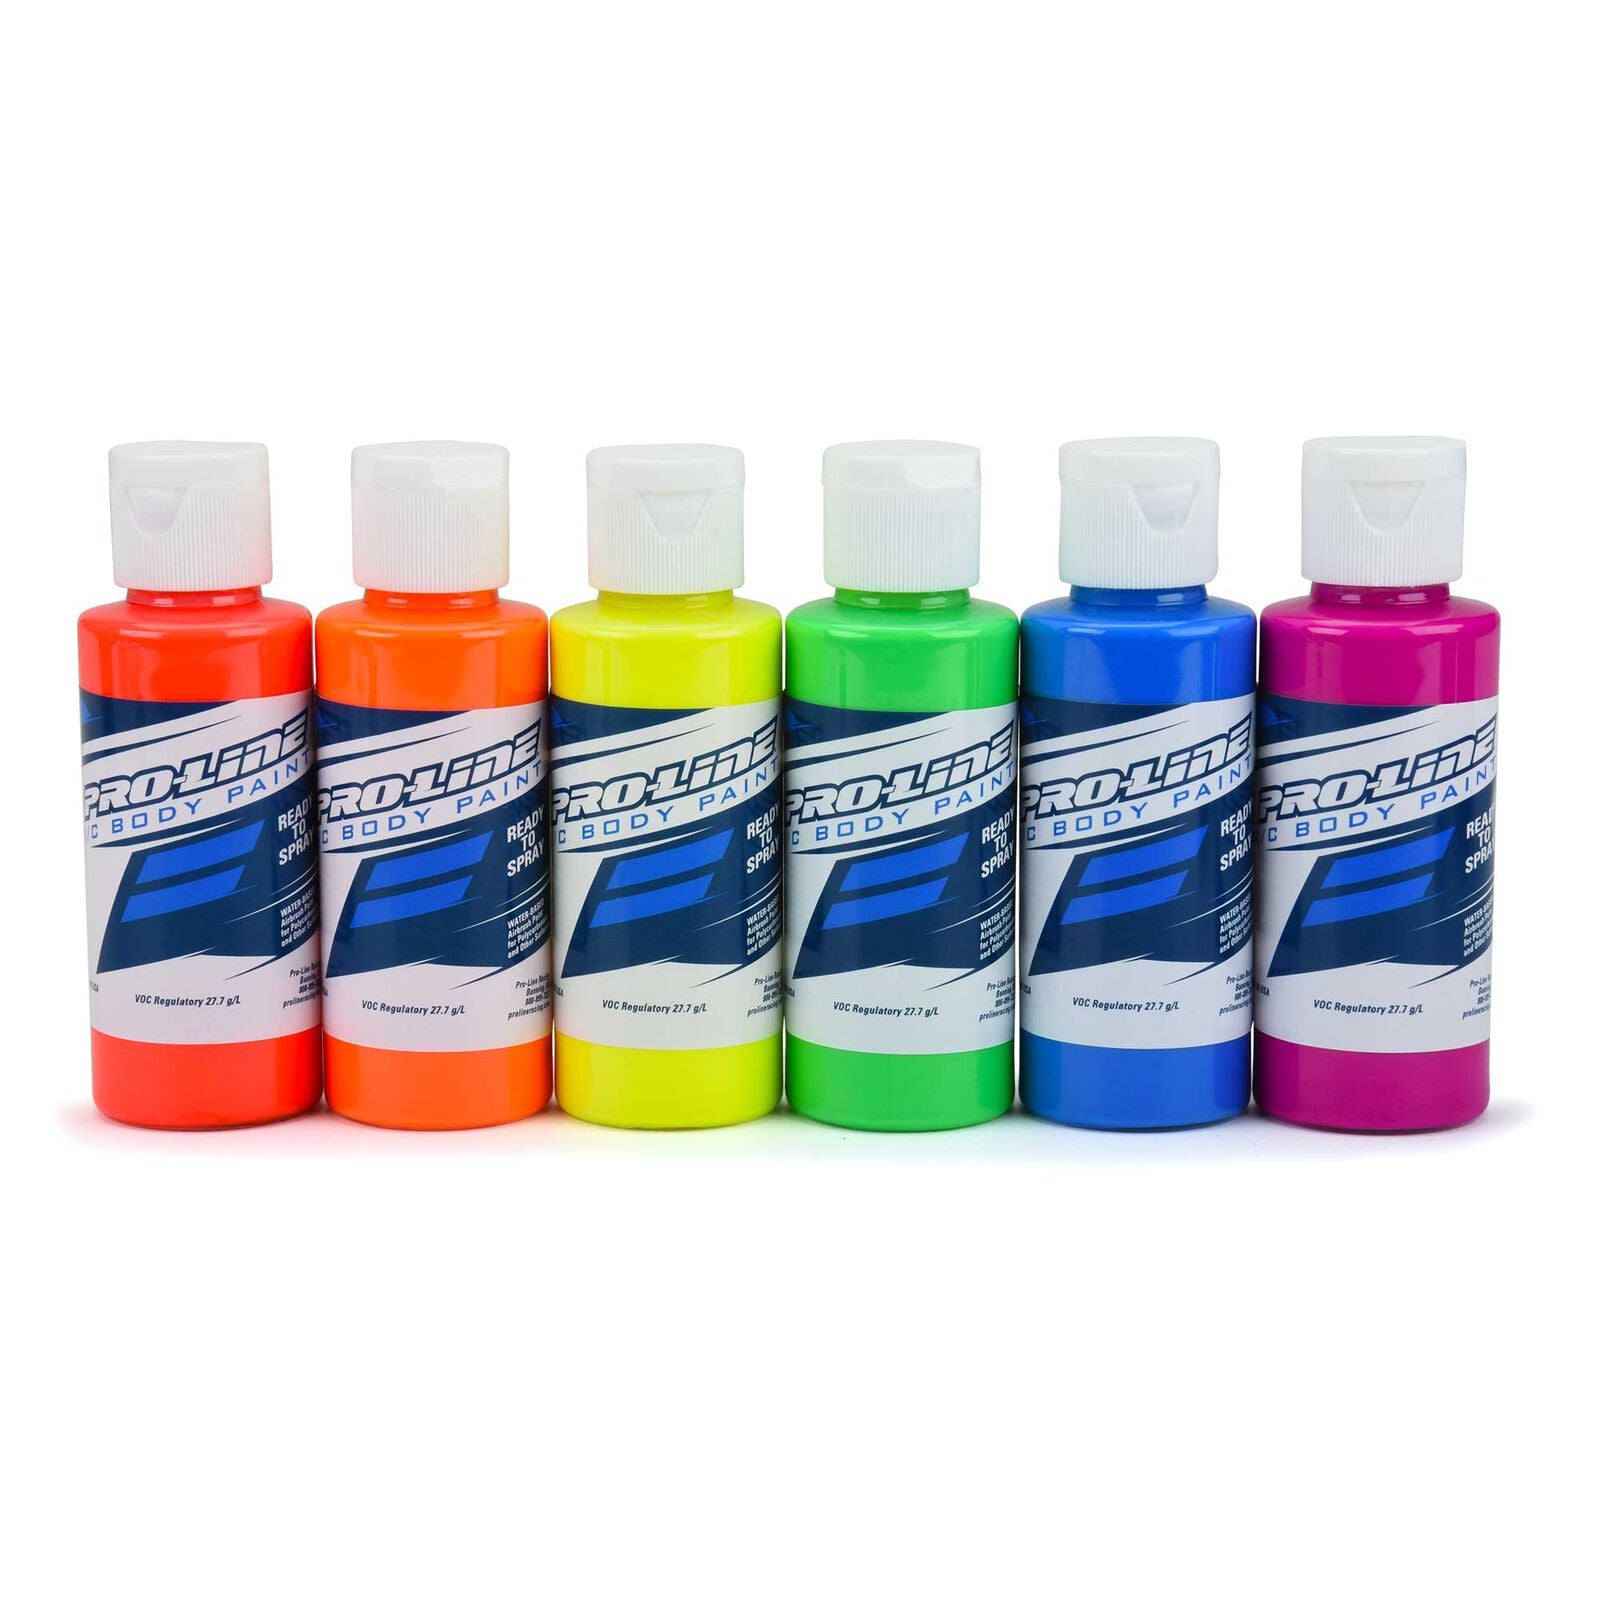 PROLINE 6323-03 RC Body Paint Fluorescent Color 6 Pack